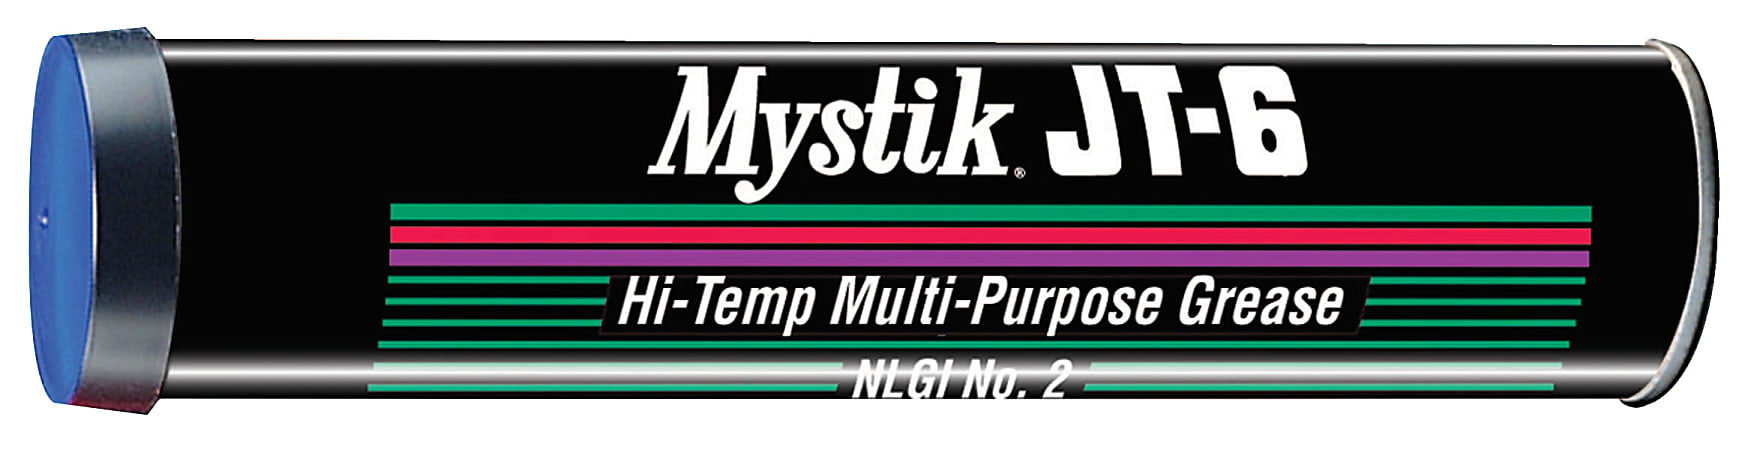 Mystik JT-6® Multipurpose Hi-Temp Grease, 14 Oz, Pack Of 10 Cartridges